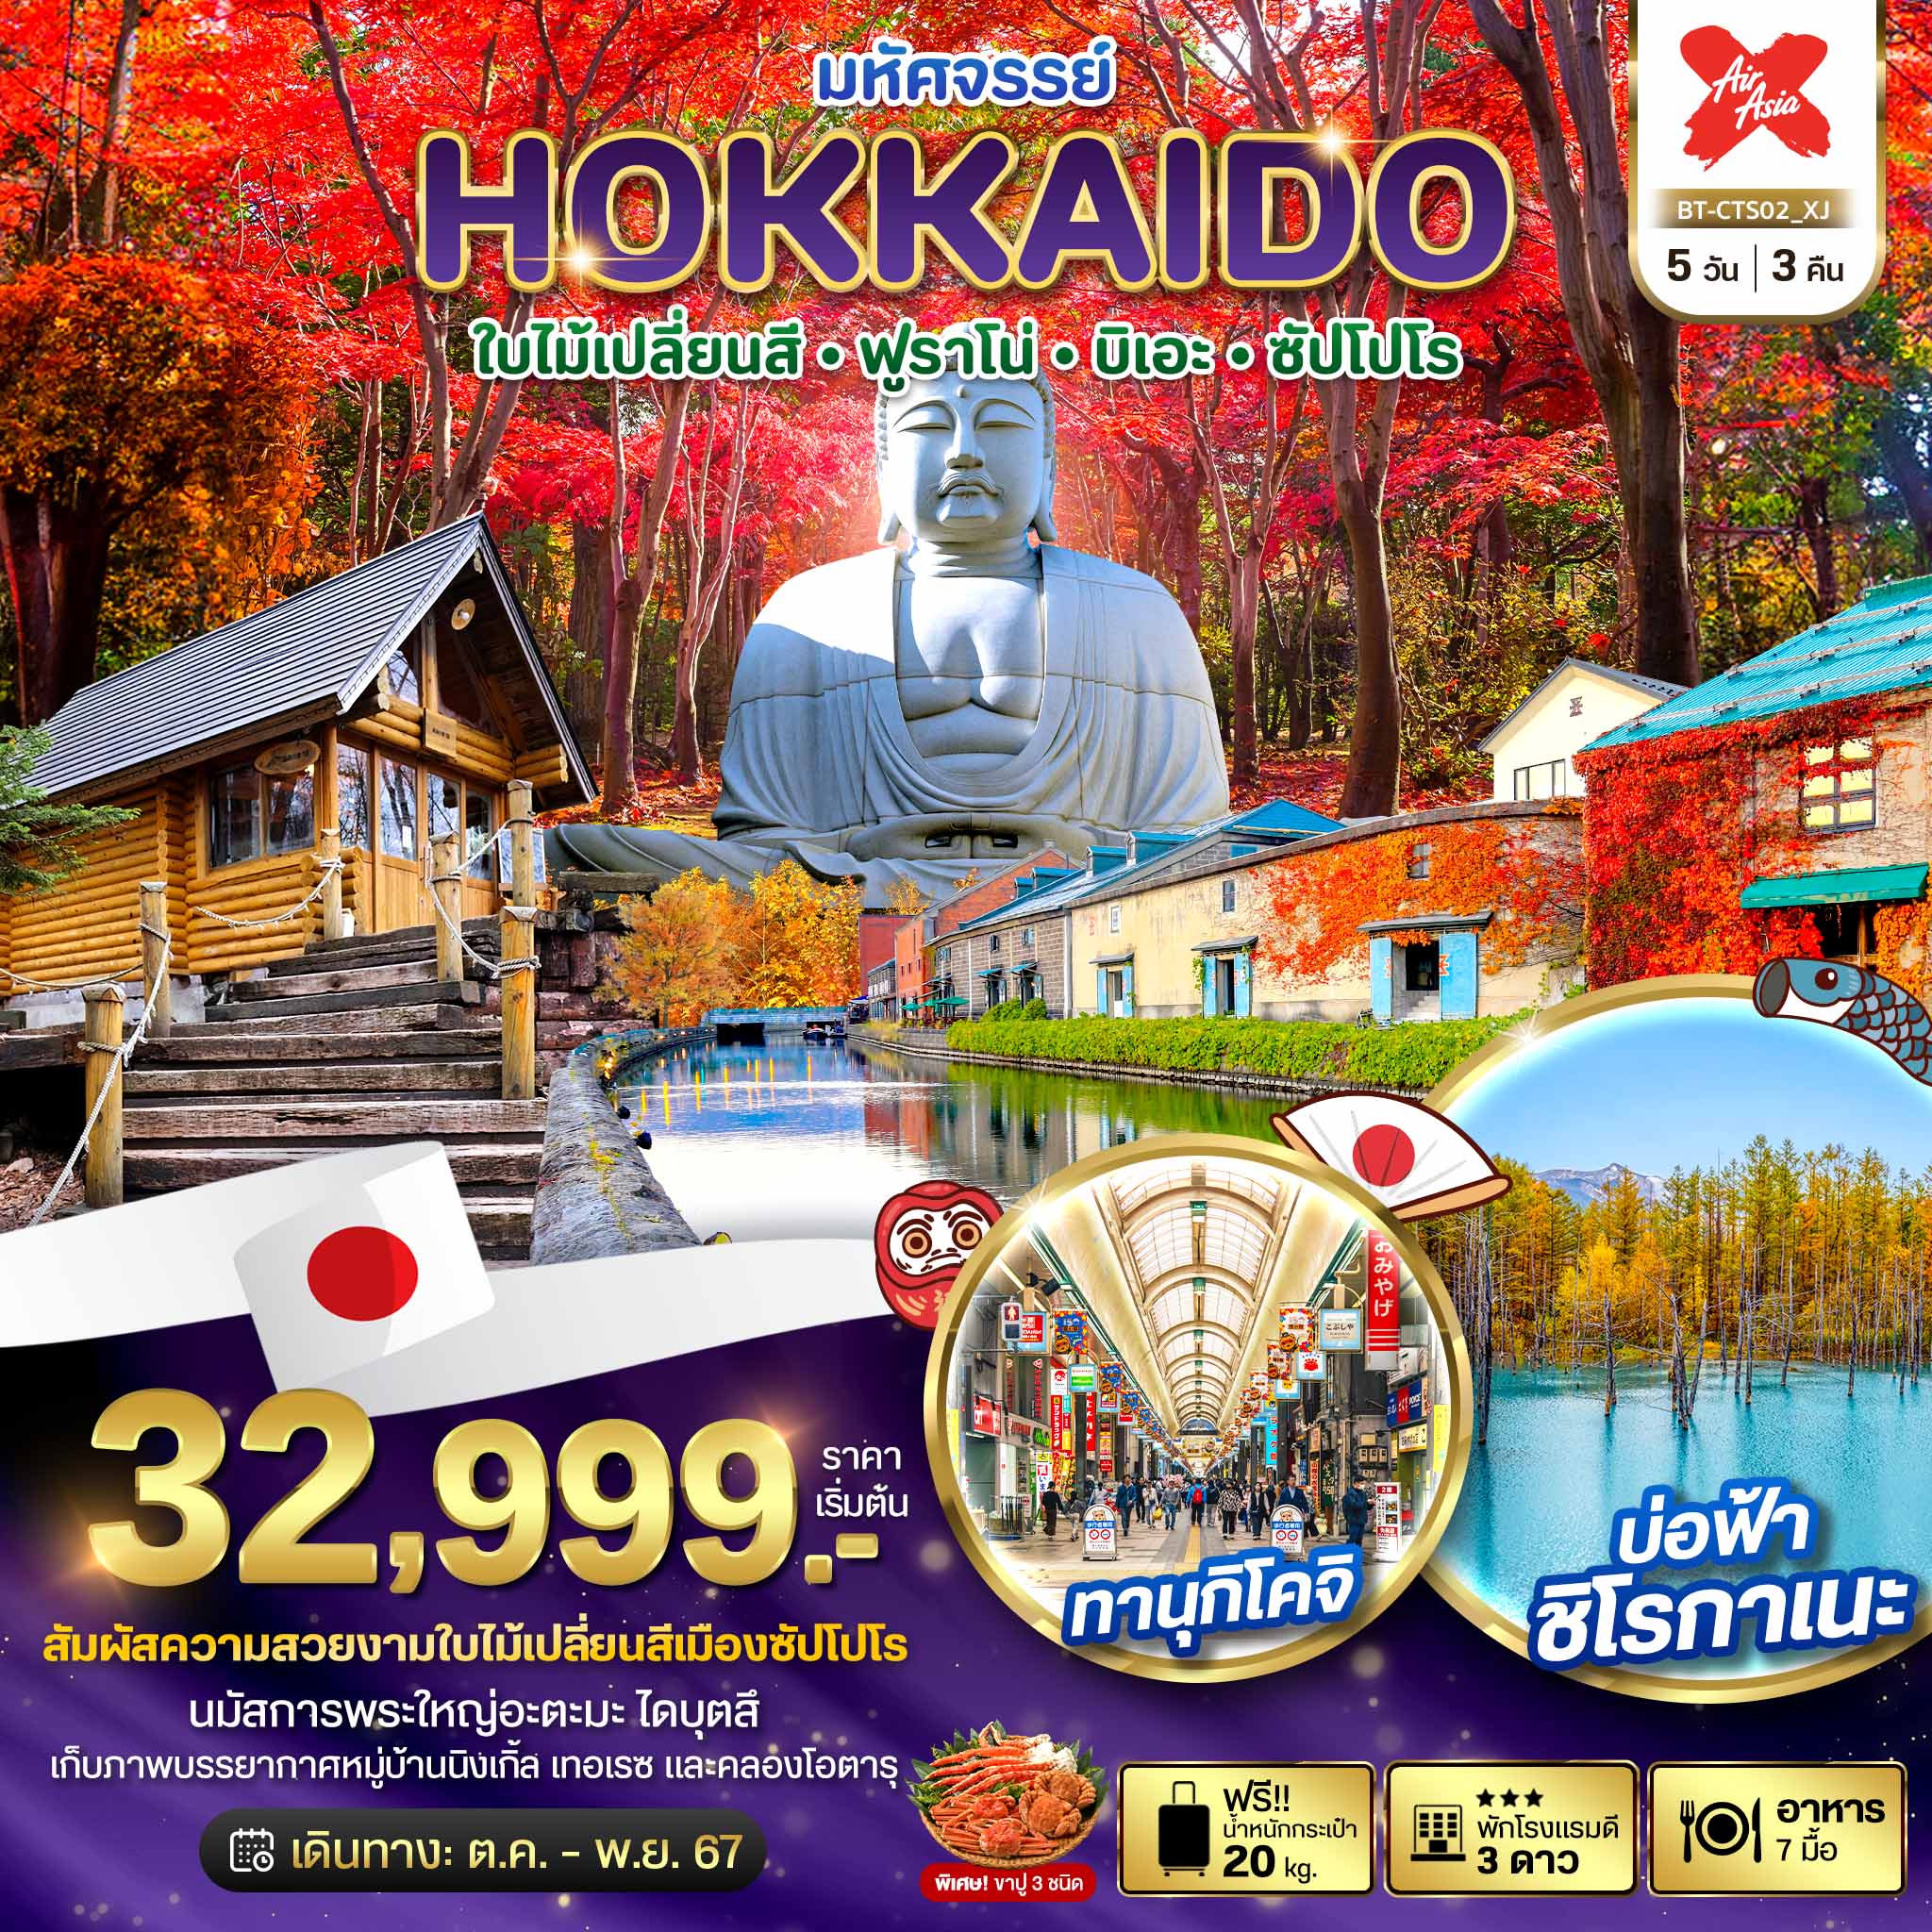 ทัวร์ญี่ปุ่น มหัศจรรย์... HOKKAIDO ใบไม้เปลี่ยนสี ฟูราโน่ บิเอะ ซัปโปโร  5วัน 3คืน XJ